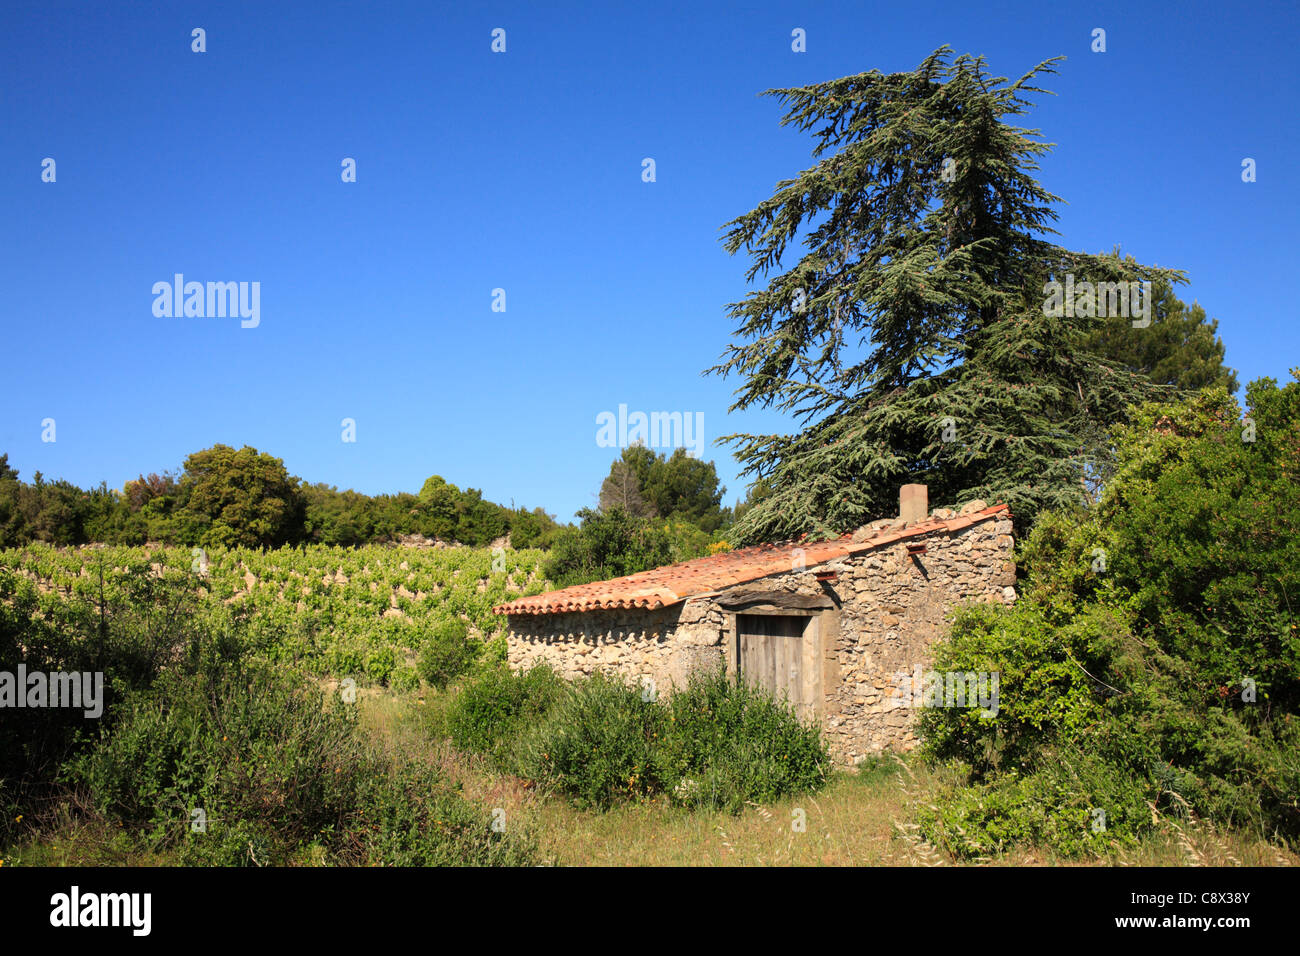 Sur le côté de la cabine d'un vignoble. Près de Minerve, Département de l'Hérault, France. Mai. Banque D'Images